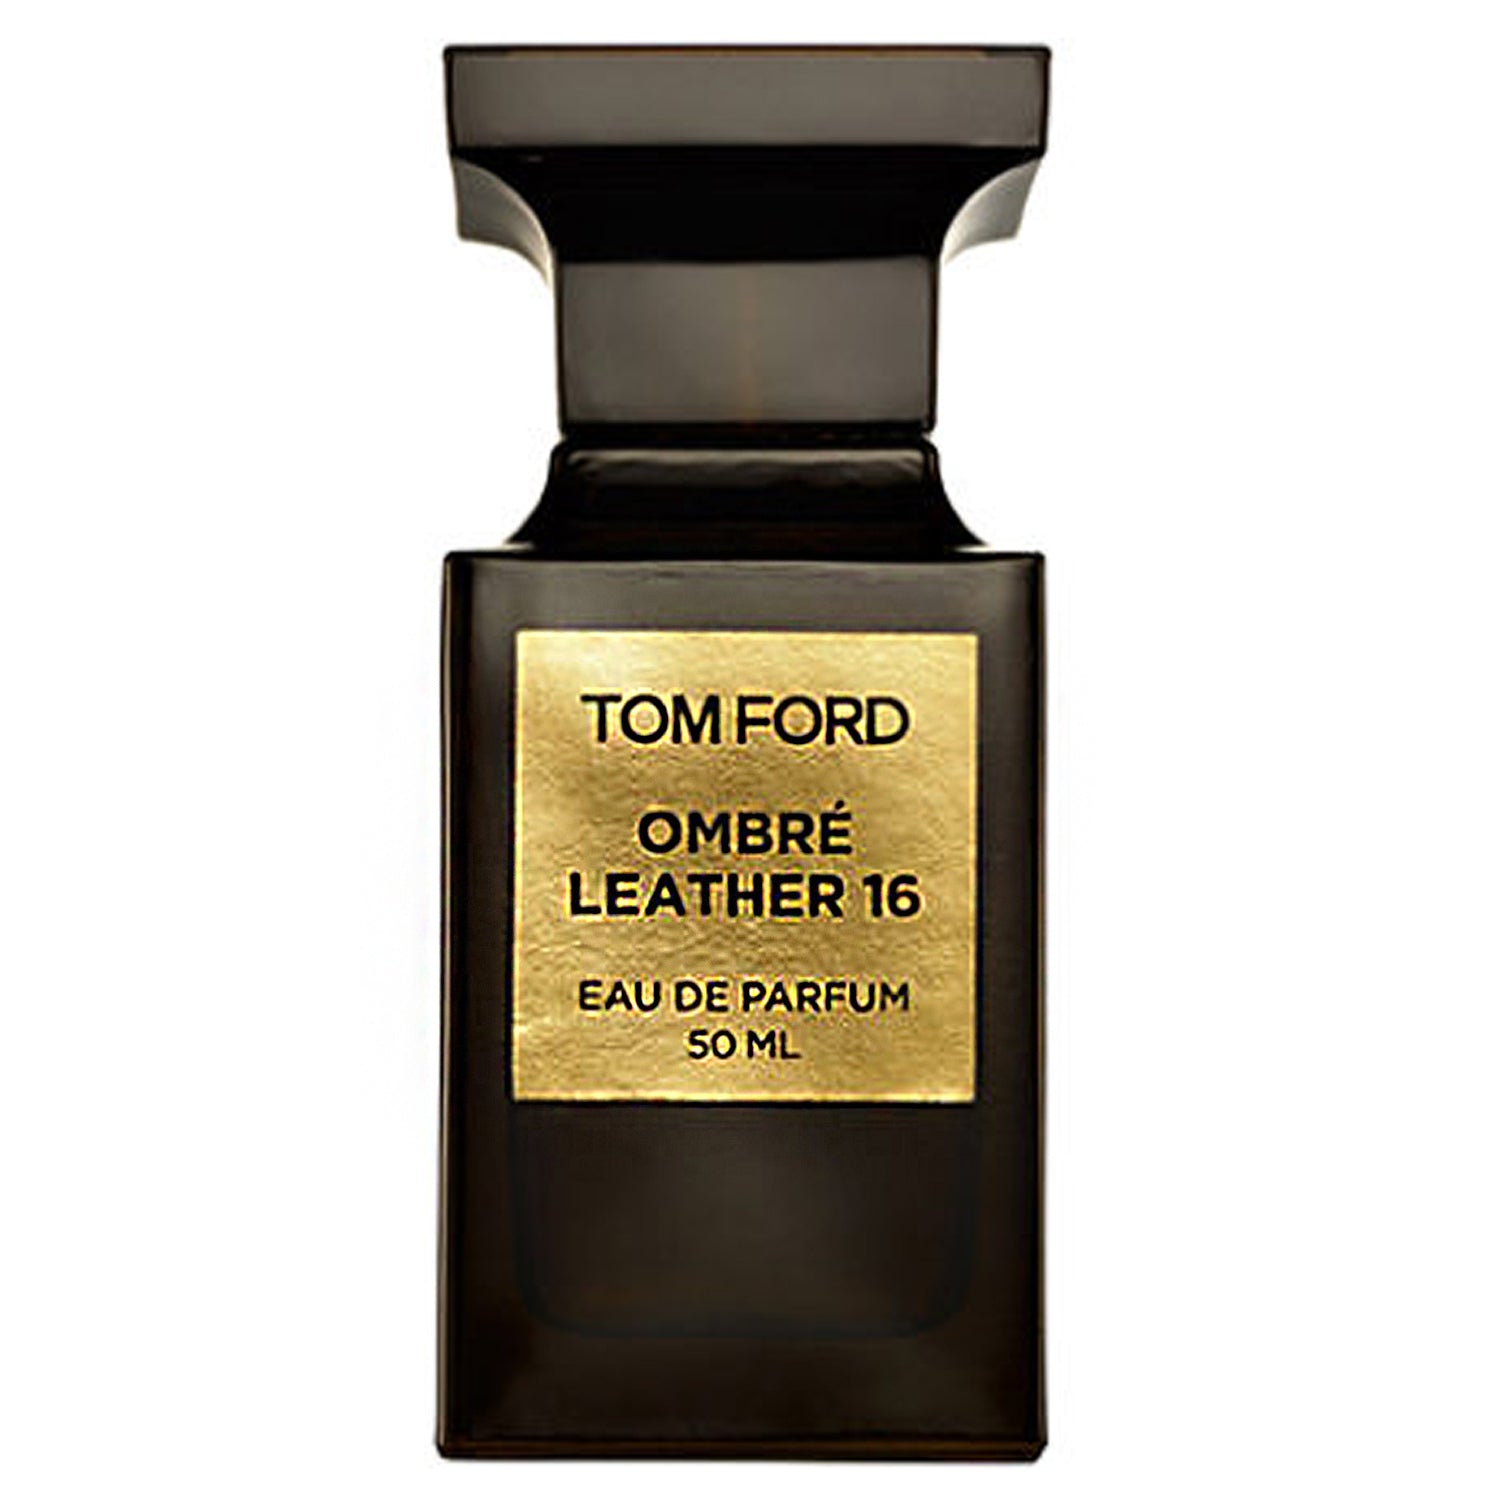 Tom Ford Ombre Leather Eau De Parfum. 2ml-5ml-10ml DECANT 